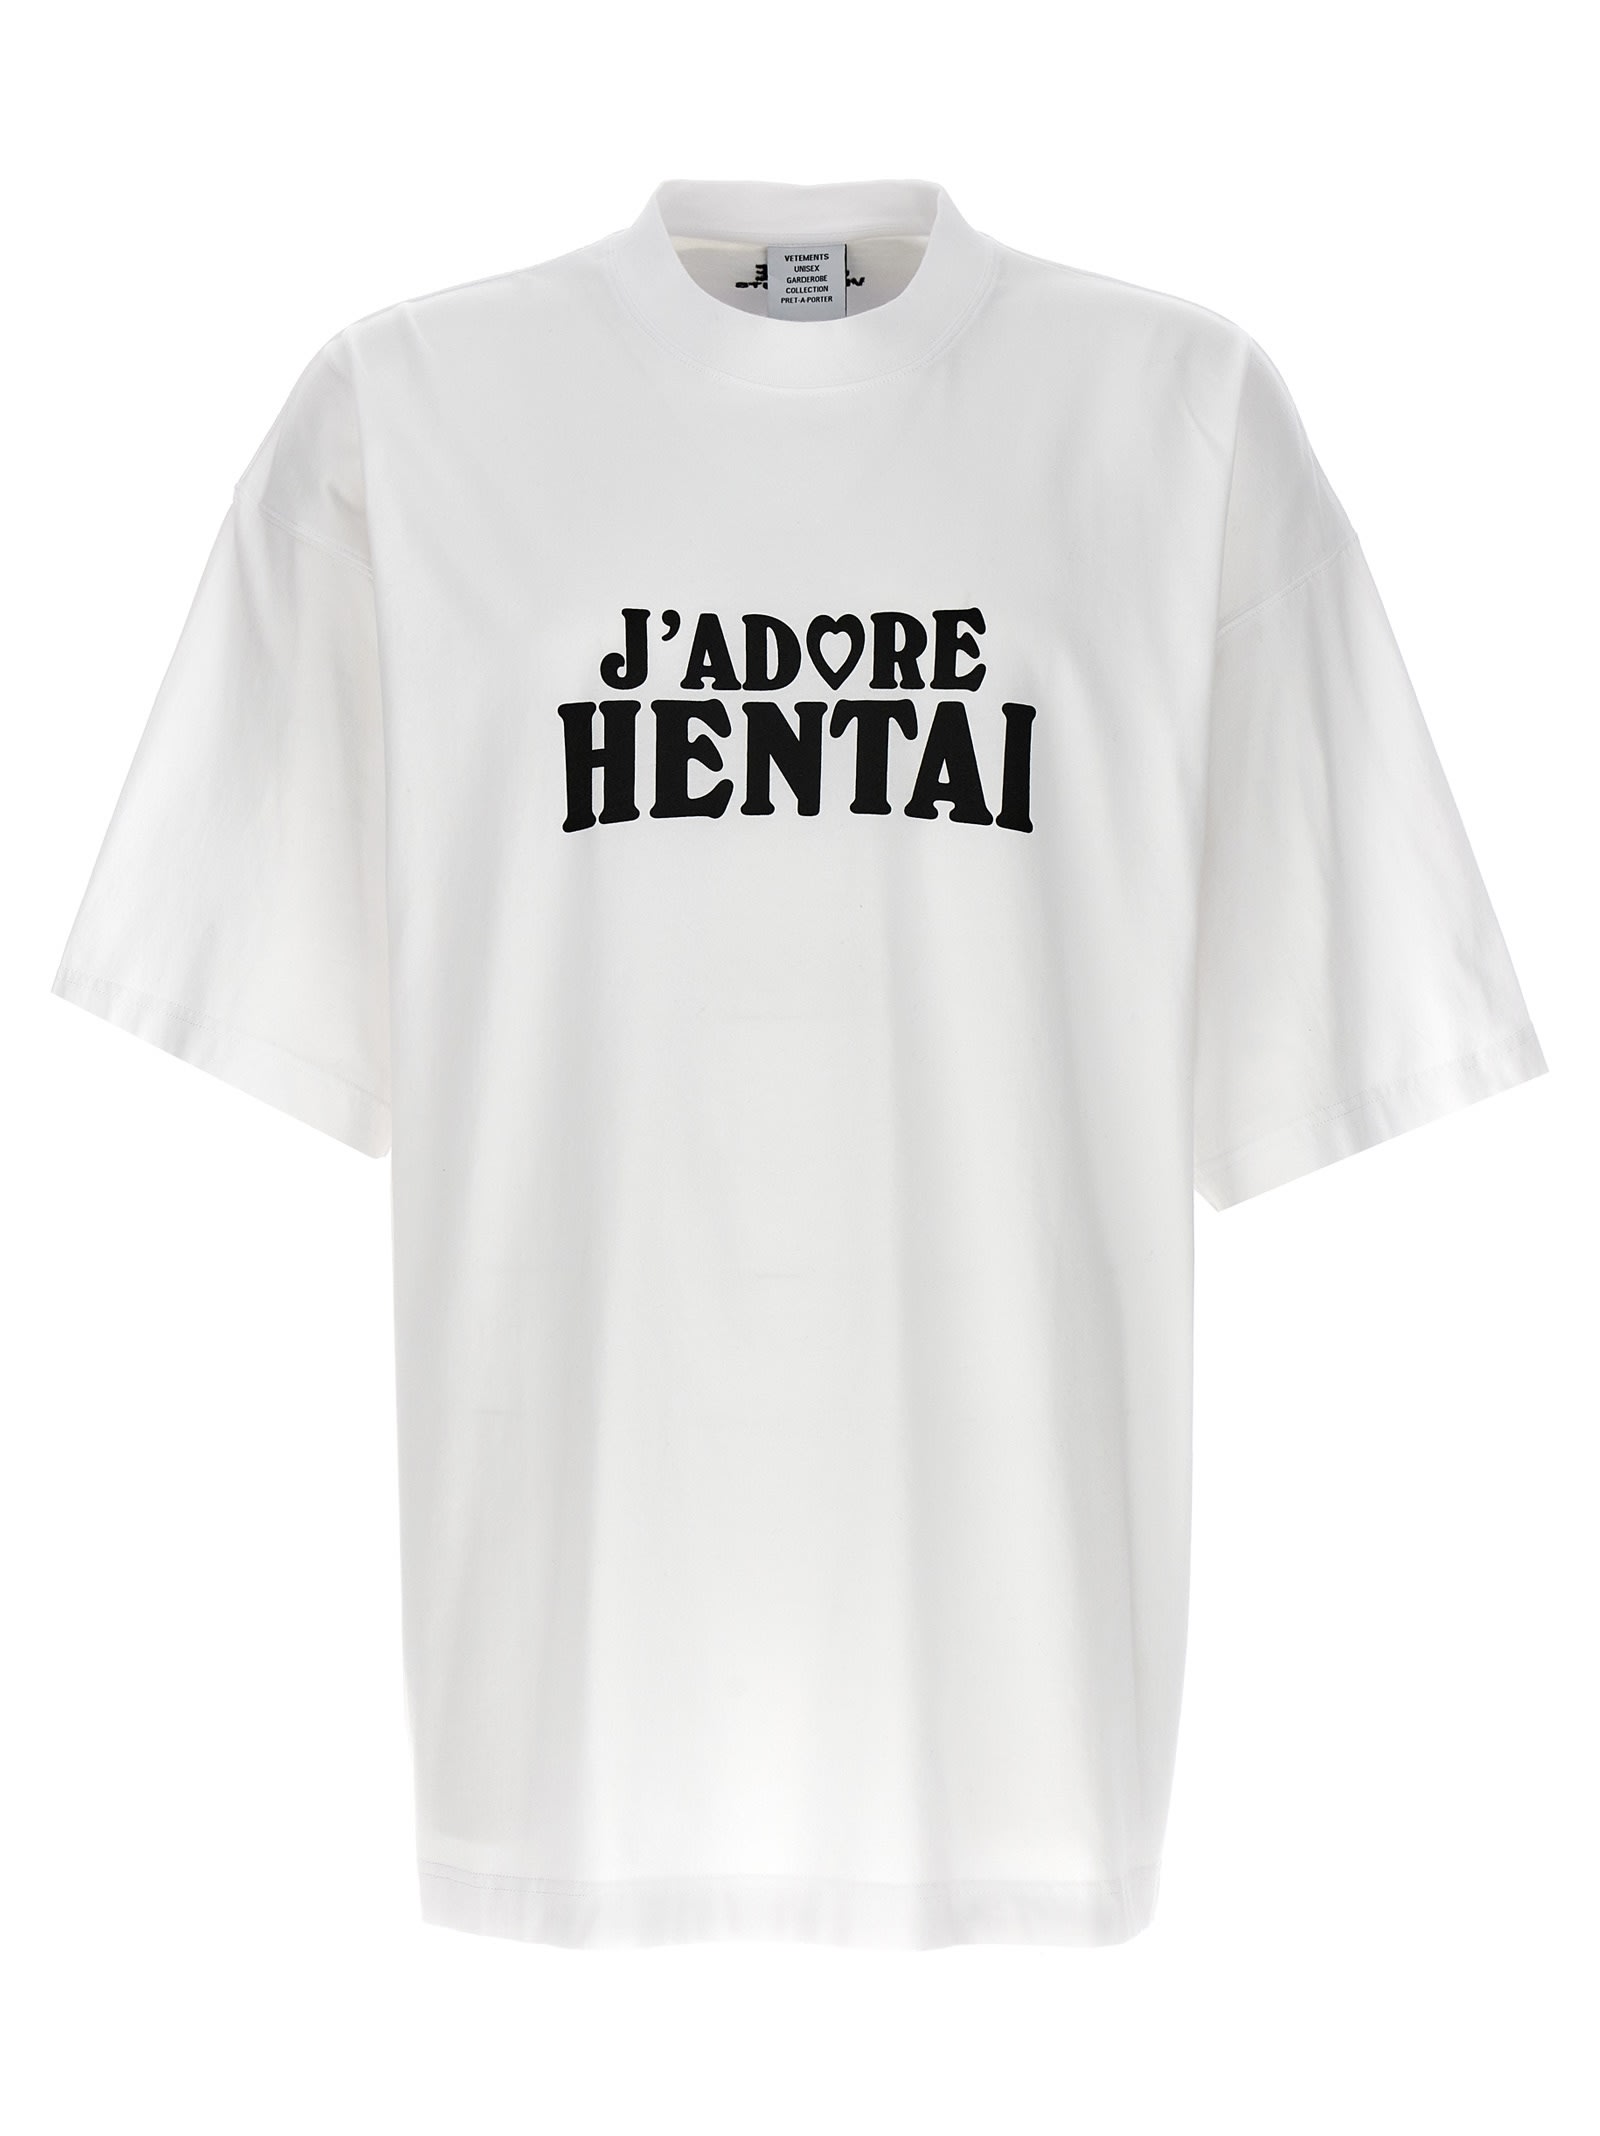 VETEMENTS hentai T-shirt